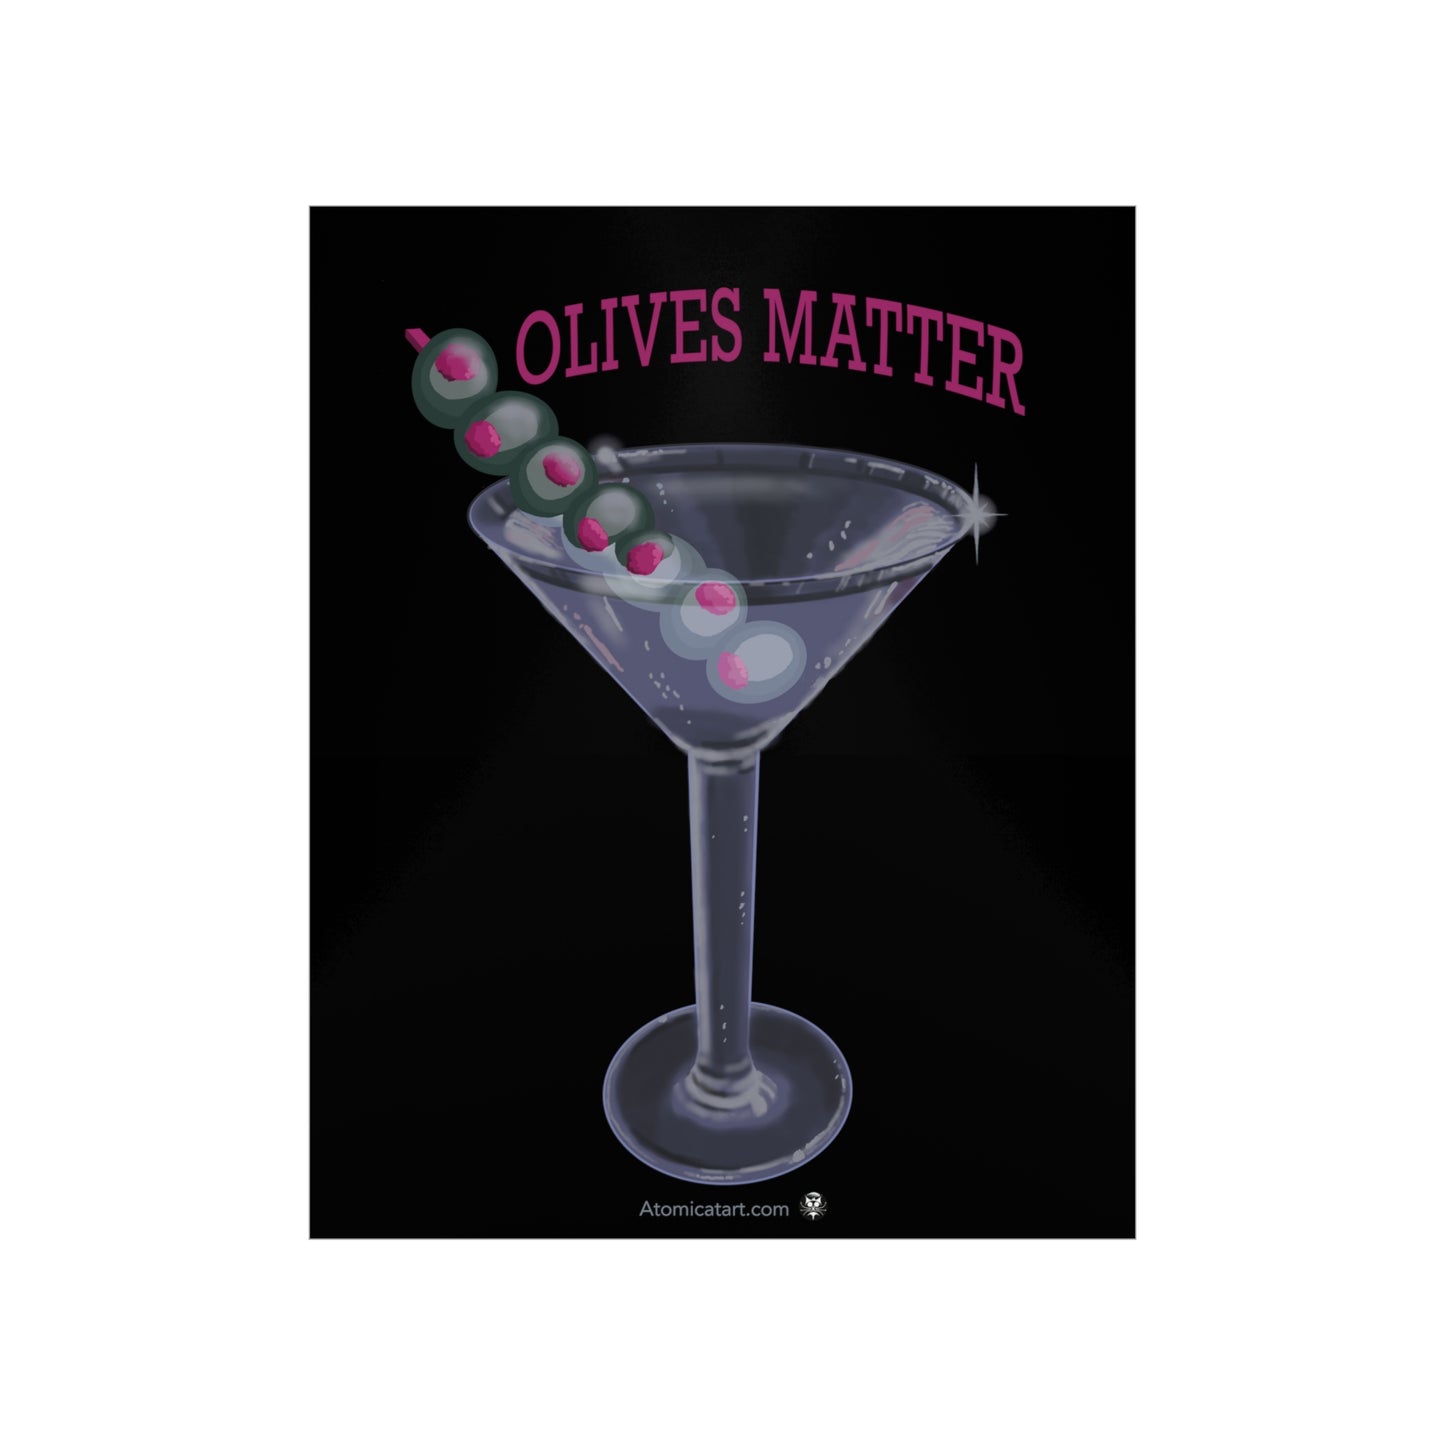 Olives Matter - Poster